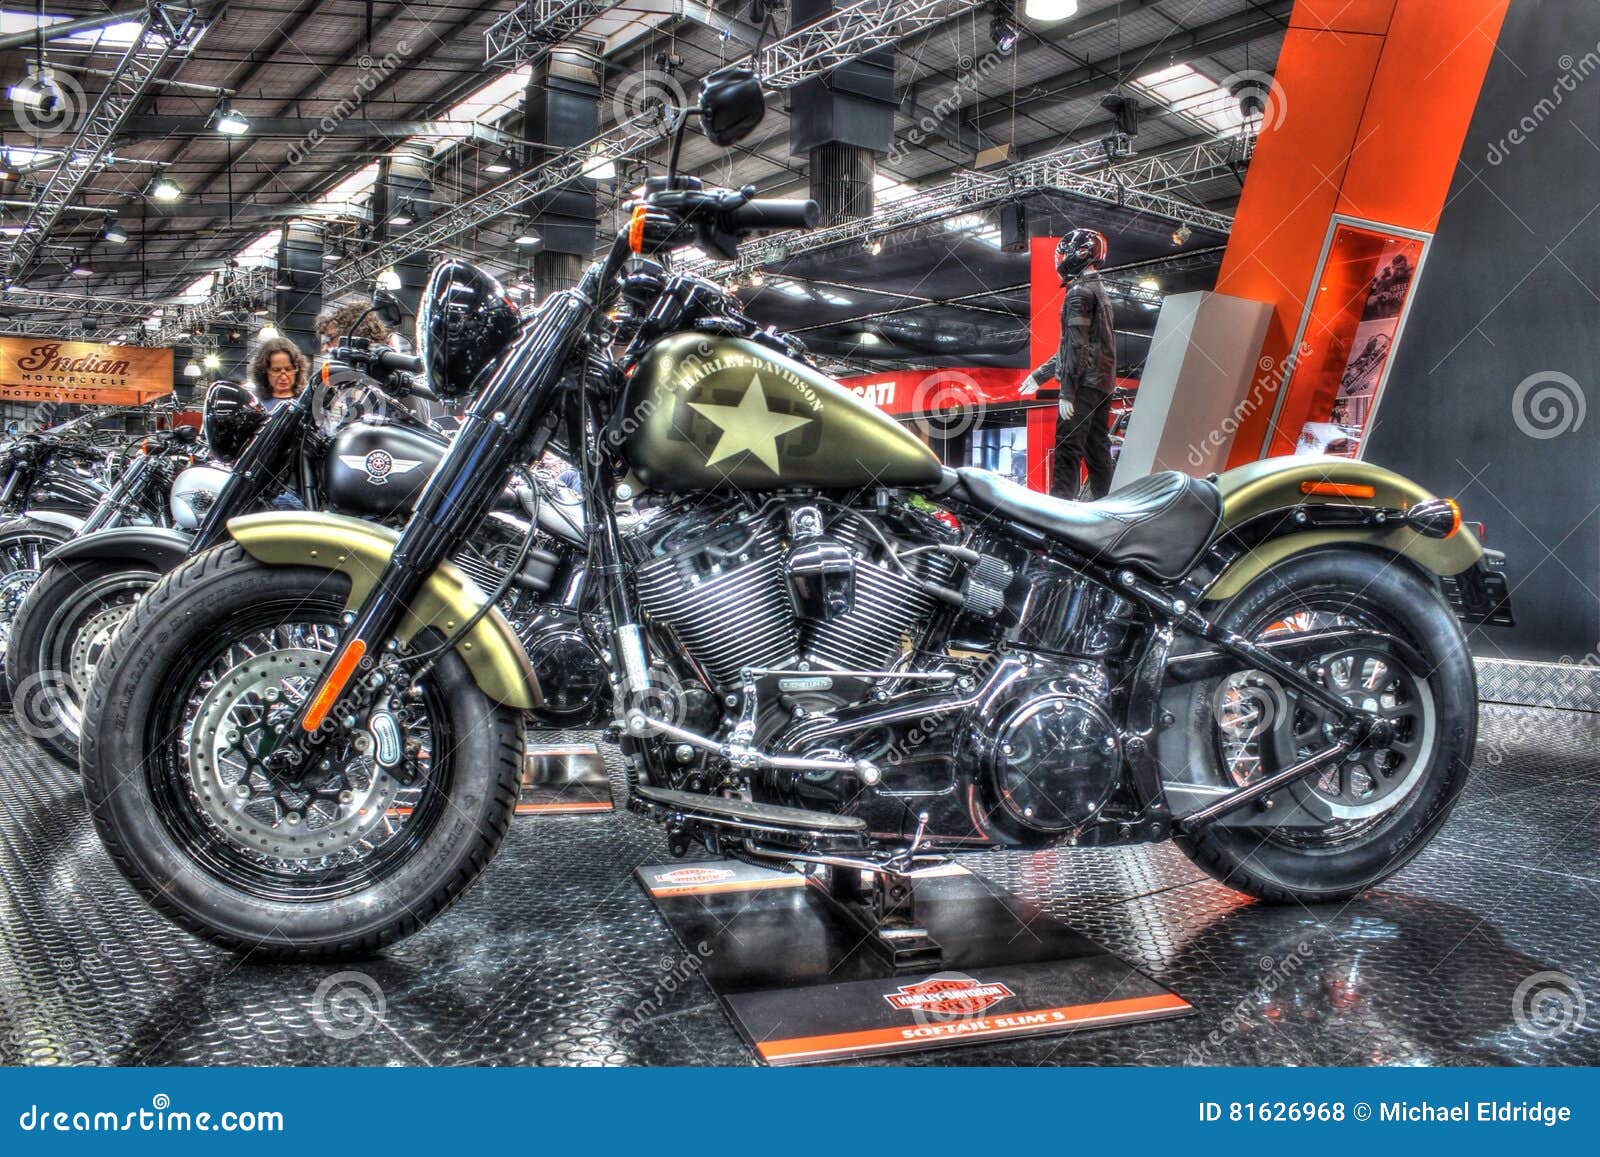 Gewohnheit Gemaltes Harley Davidson Motorrad Redaktionelles Stockfoto Bild Von Automobil Erscheinen 81626968